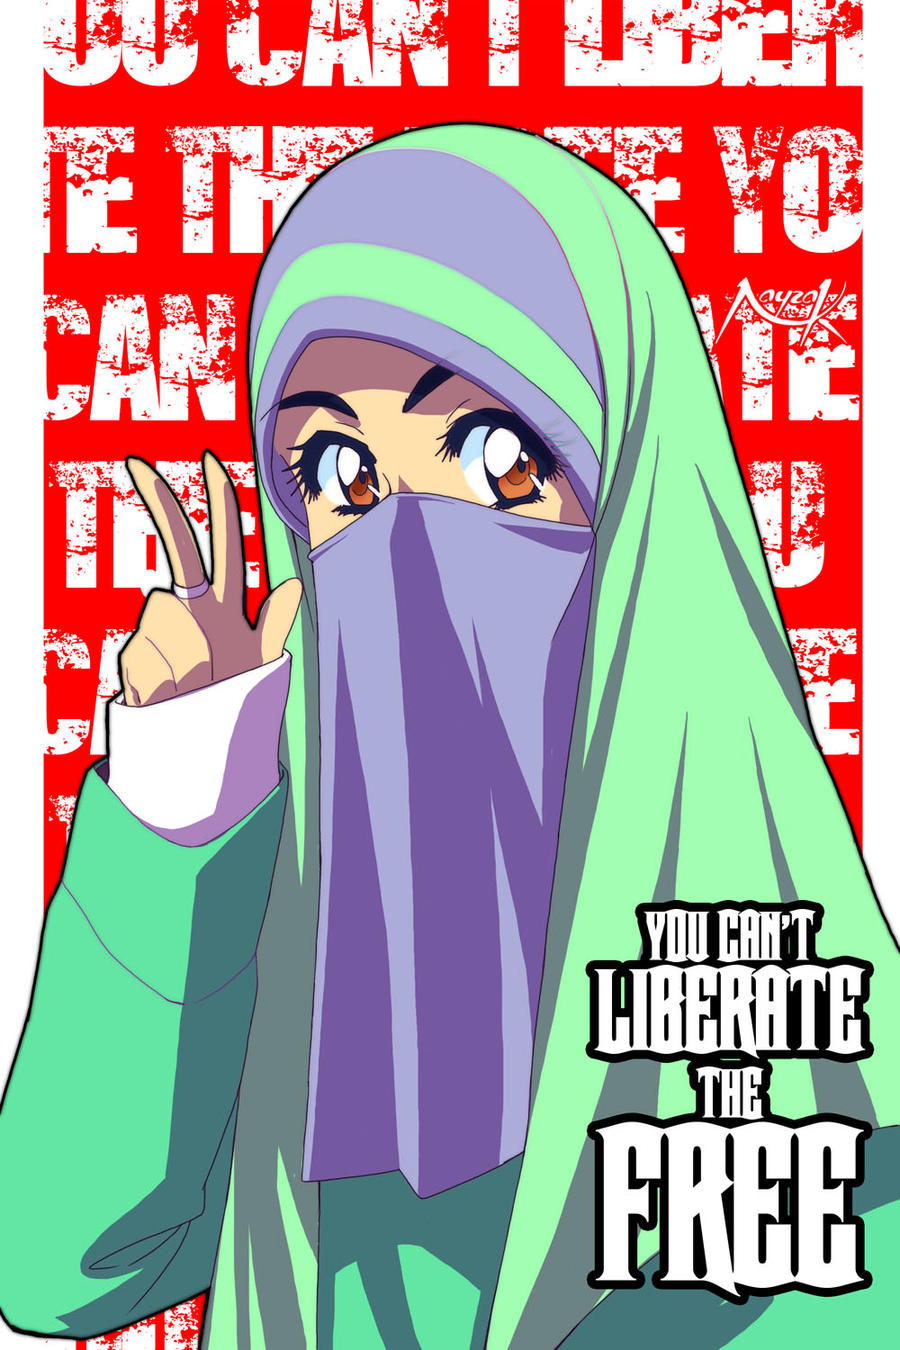 Kartun Muslimah Berpurdah Images